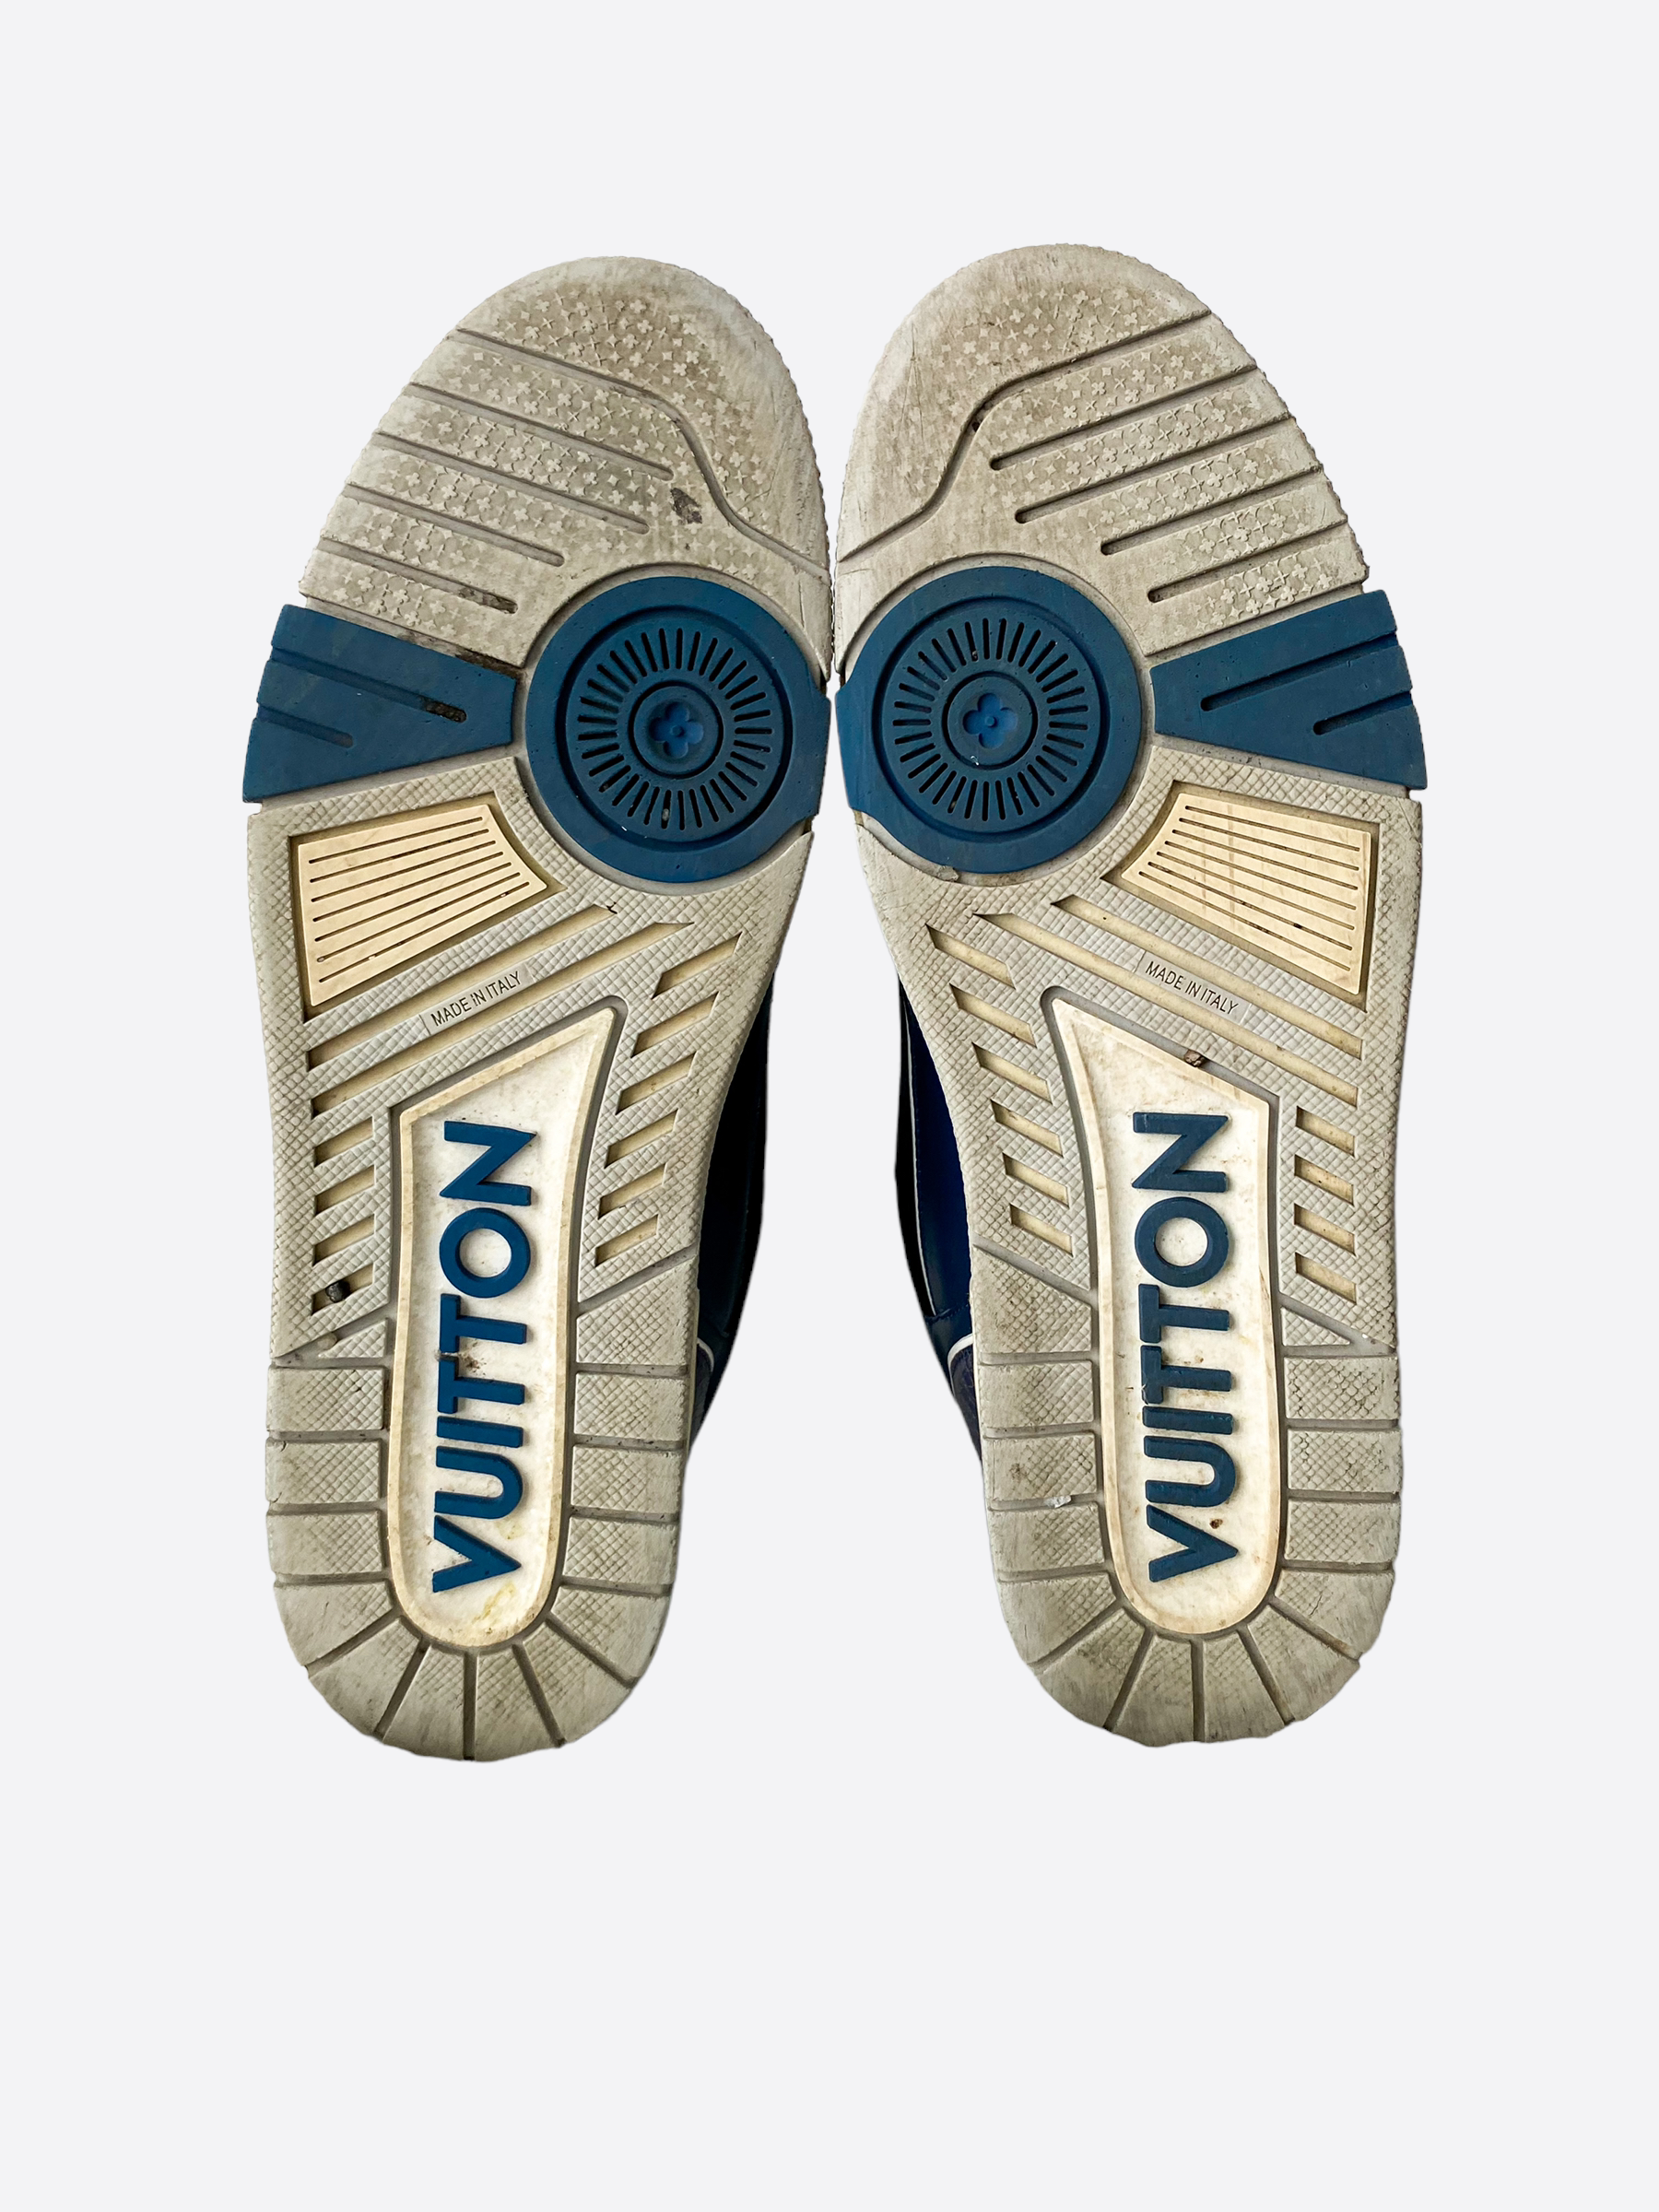 Louis Vuitton Shoes for Boys 2T-5T